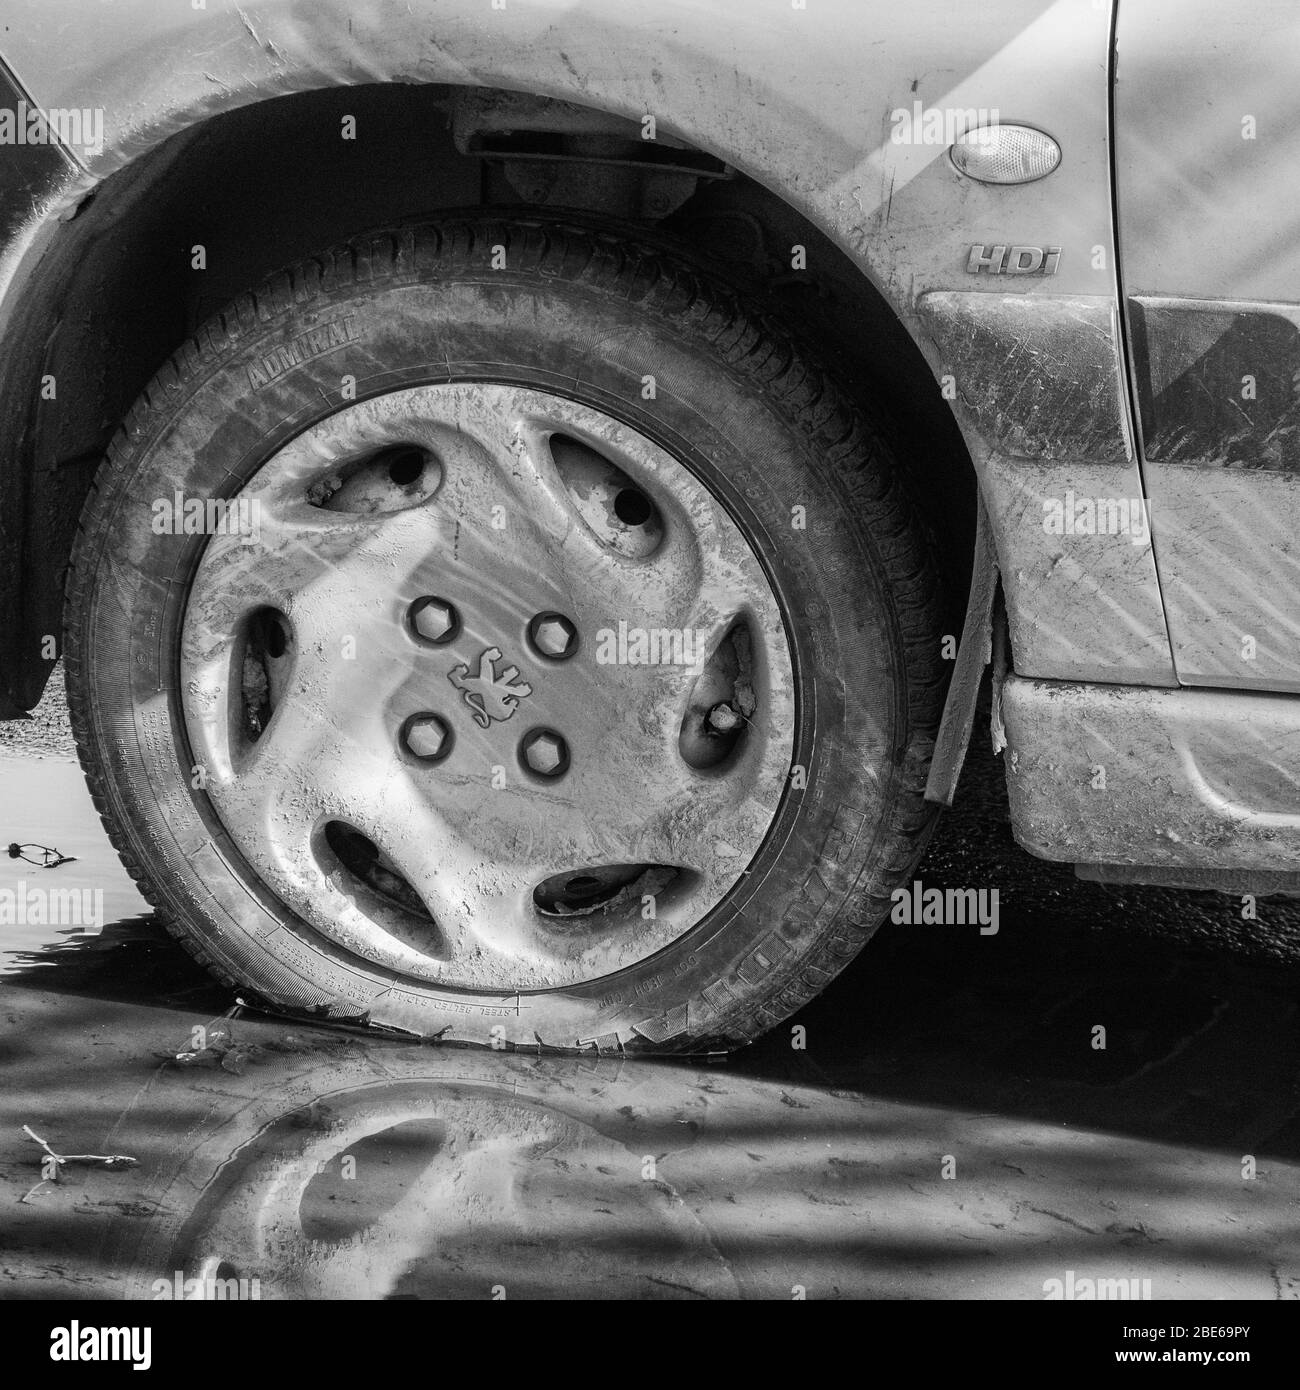 Grintoso bianco e nero di ruota / pneumatico e passaruota di una vettura Peugeot, con logo Peugeot marquelion visibile su berretto. HDI ma modello preciso sconosciuto. Foto Stock